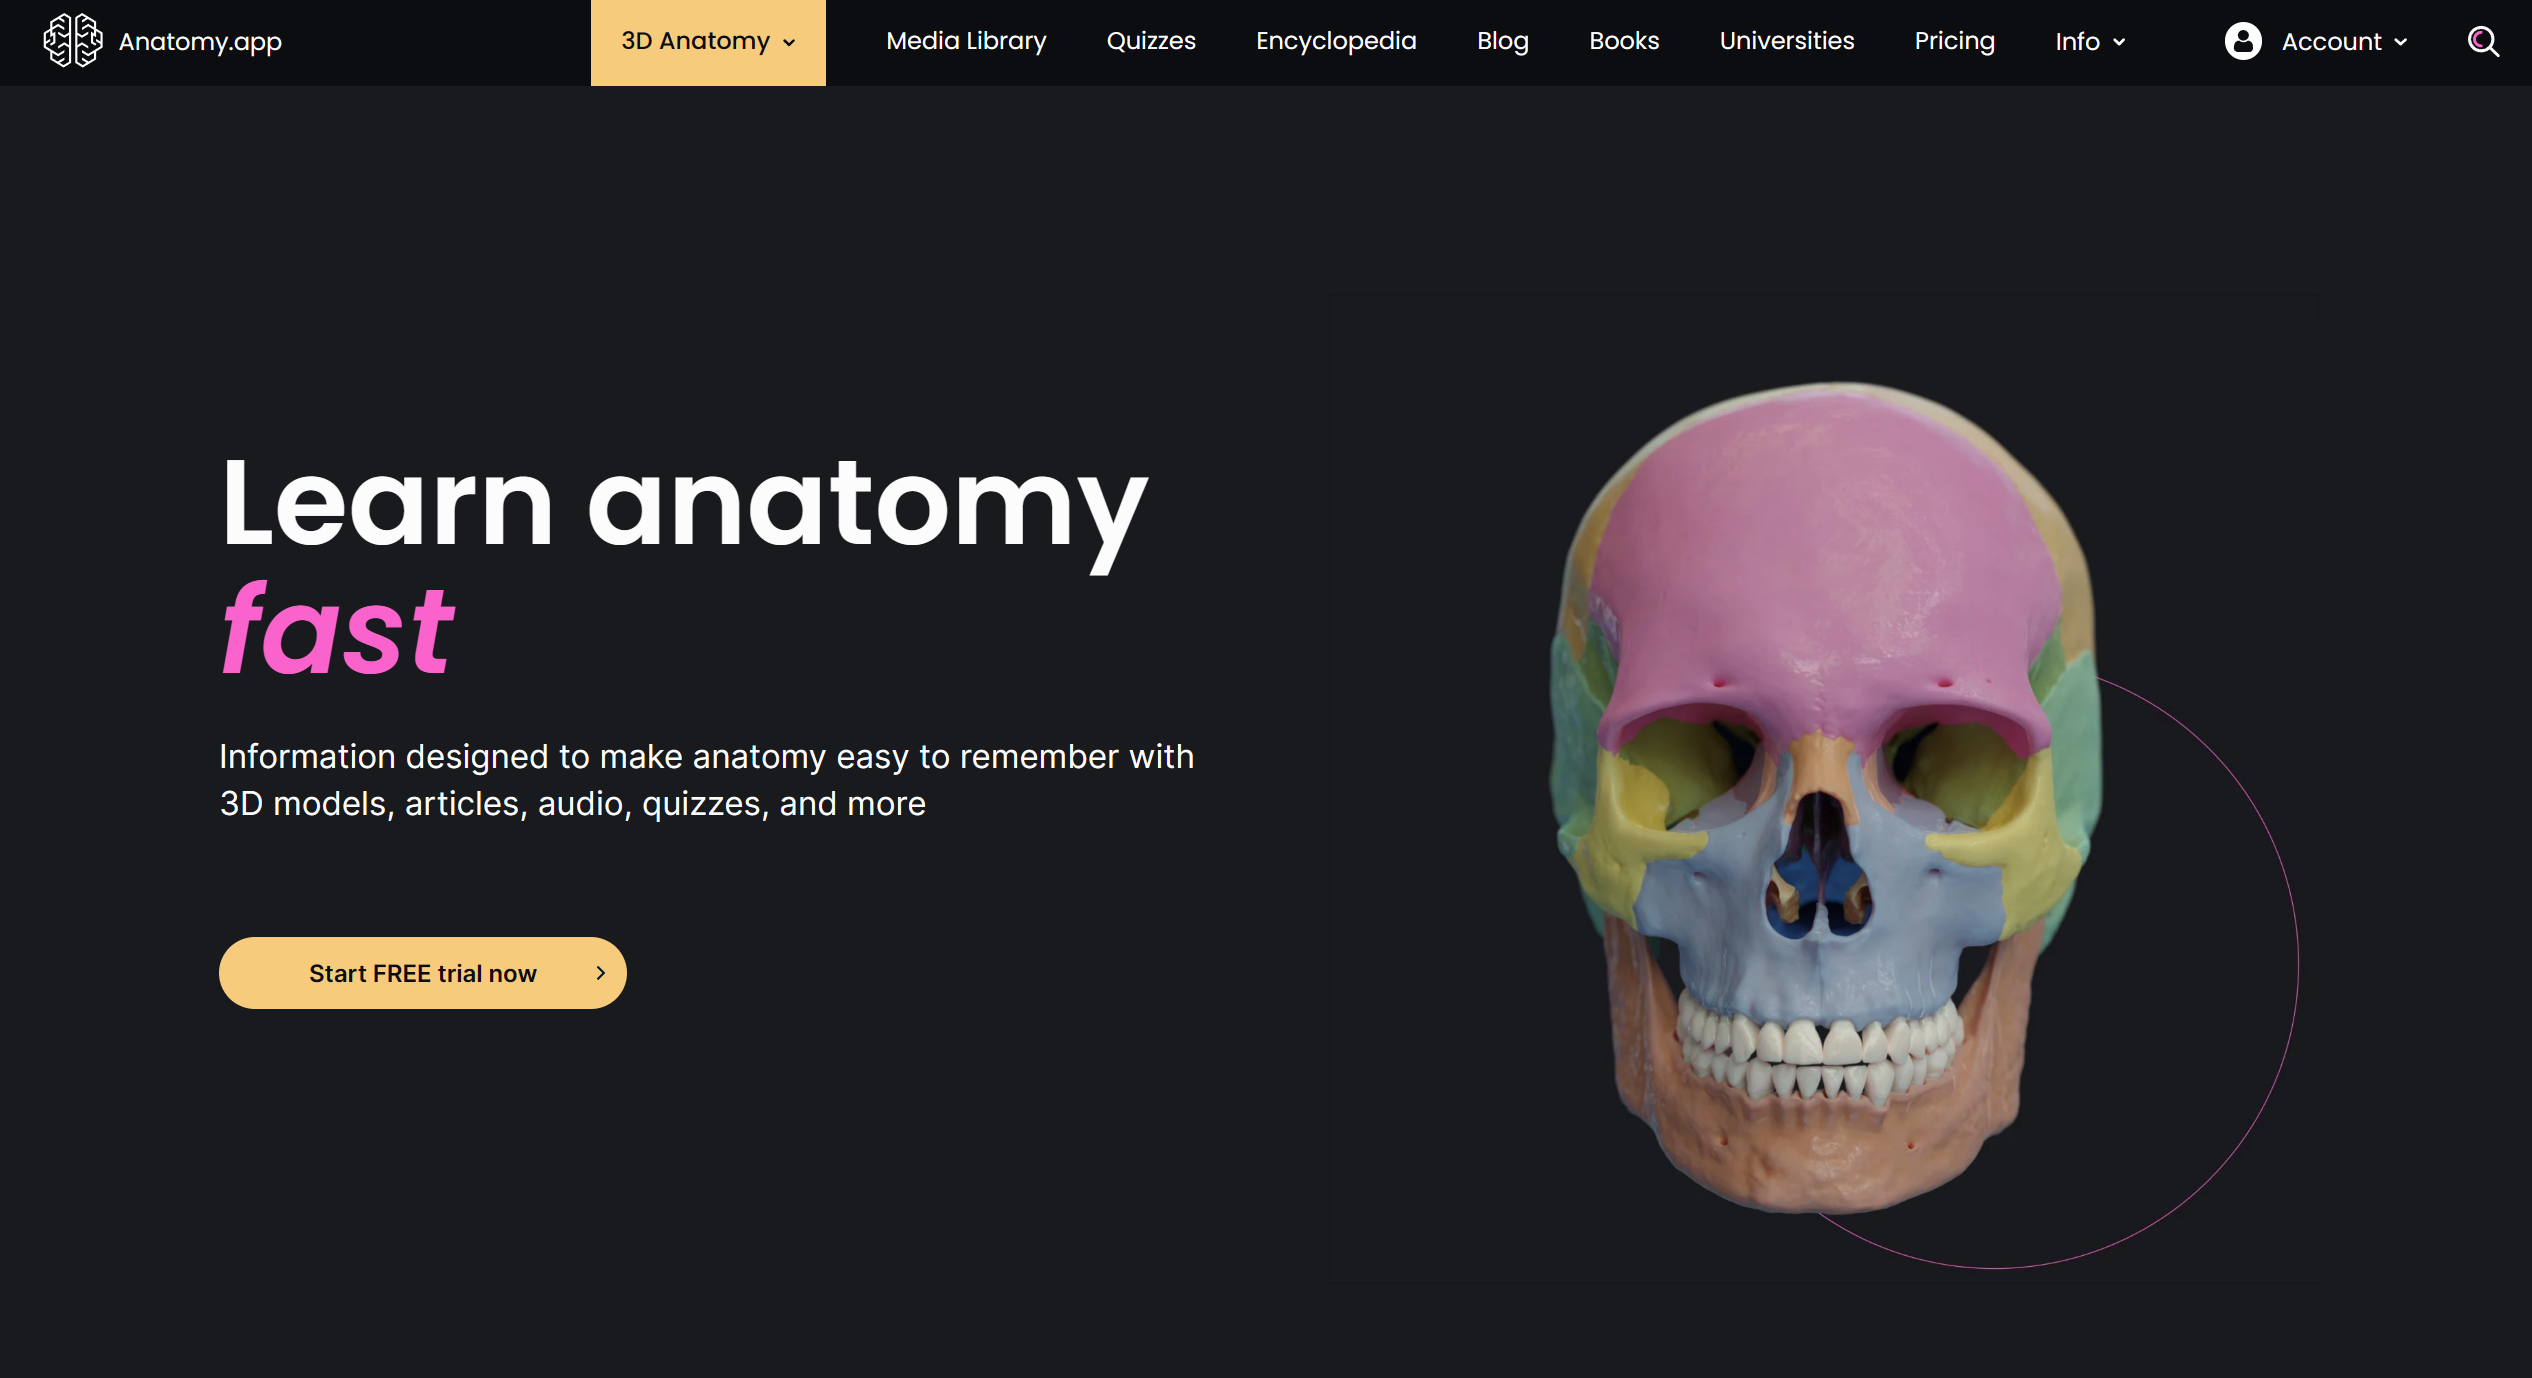 Anatomy.app cover